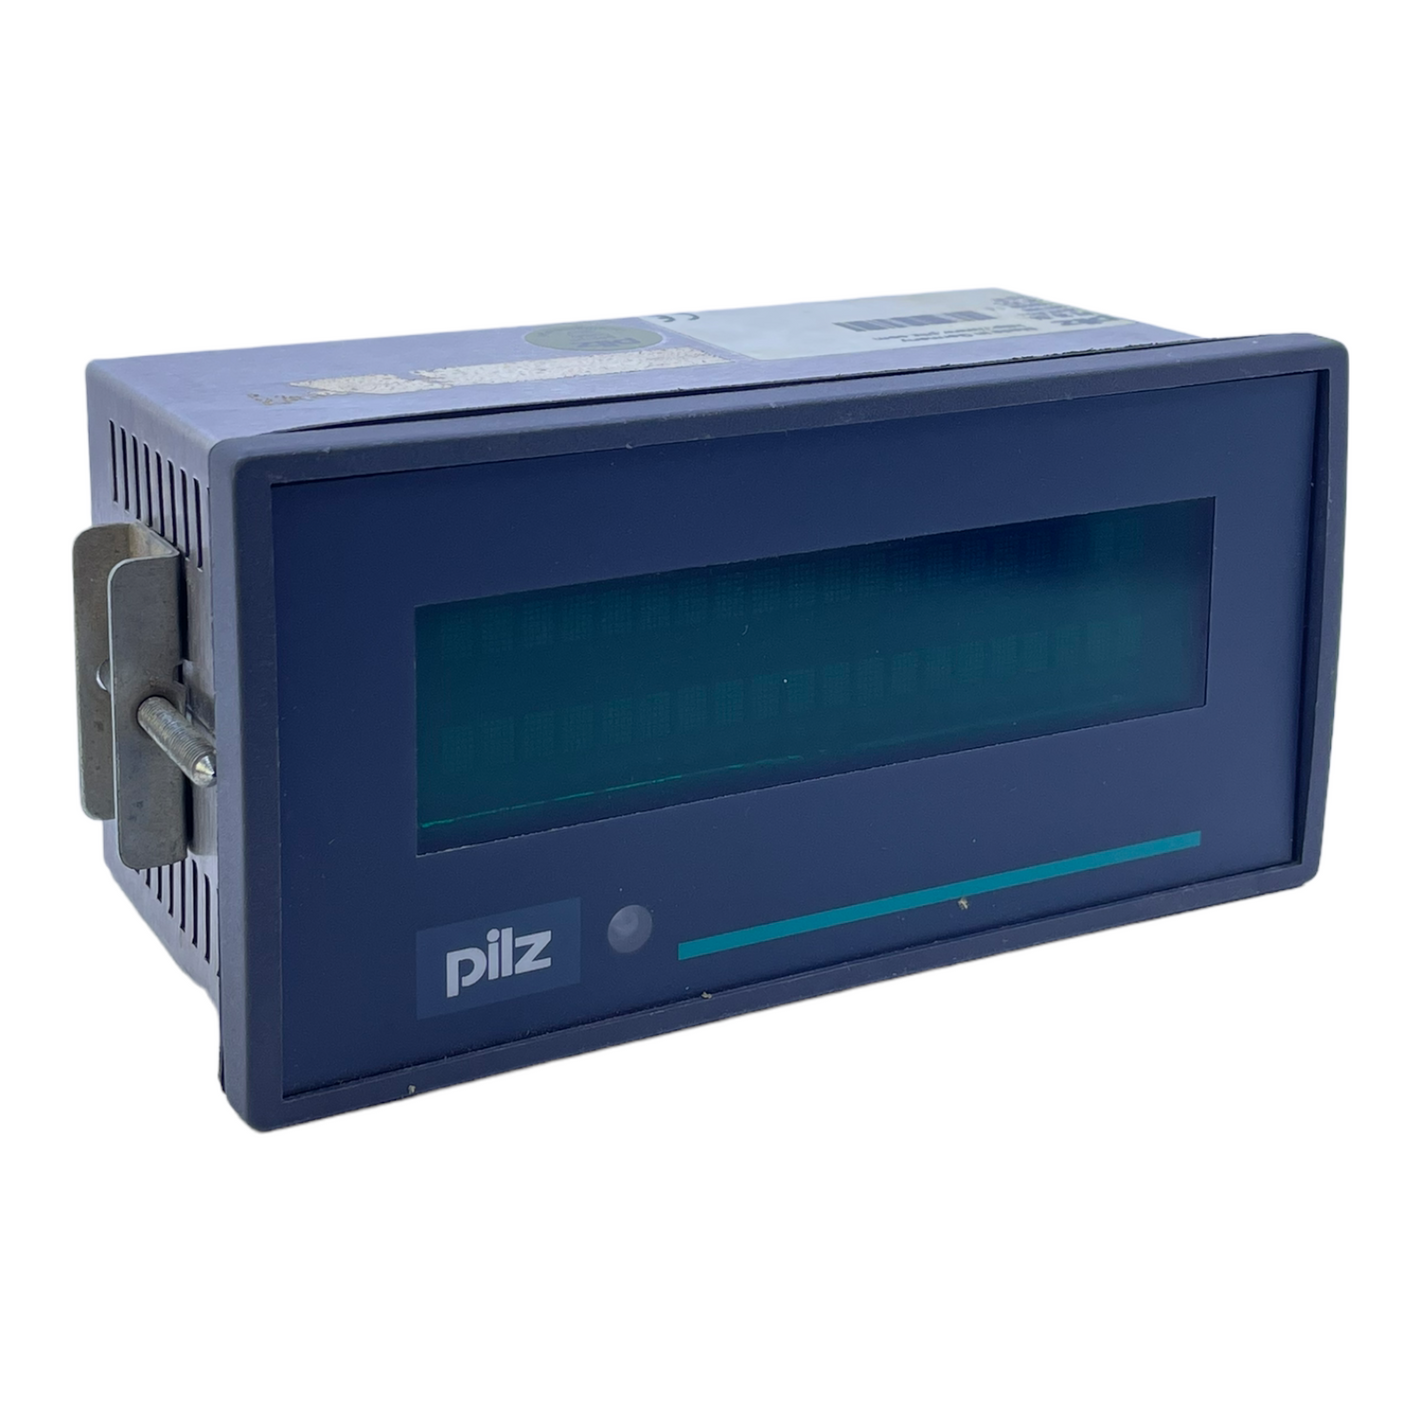 Pilz PX30/64 display 307668 24V DC 3.5W